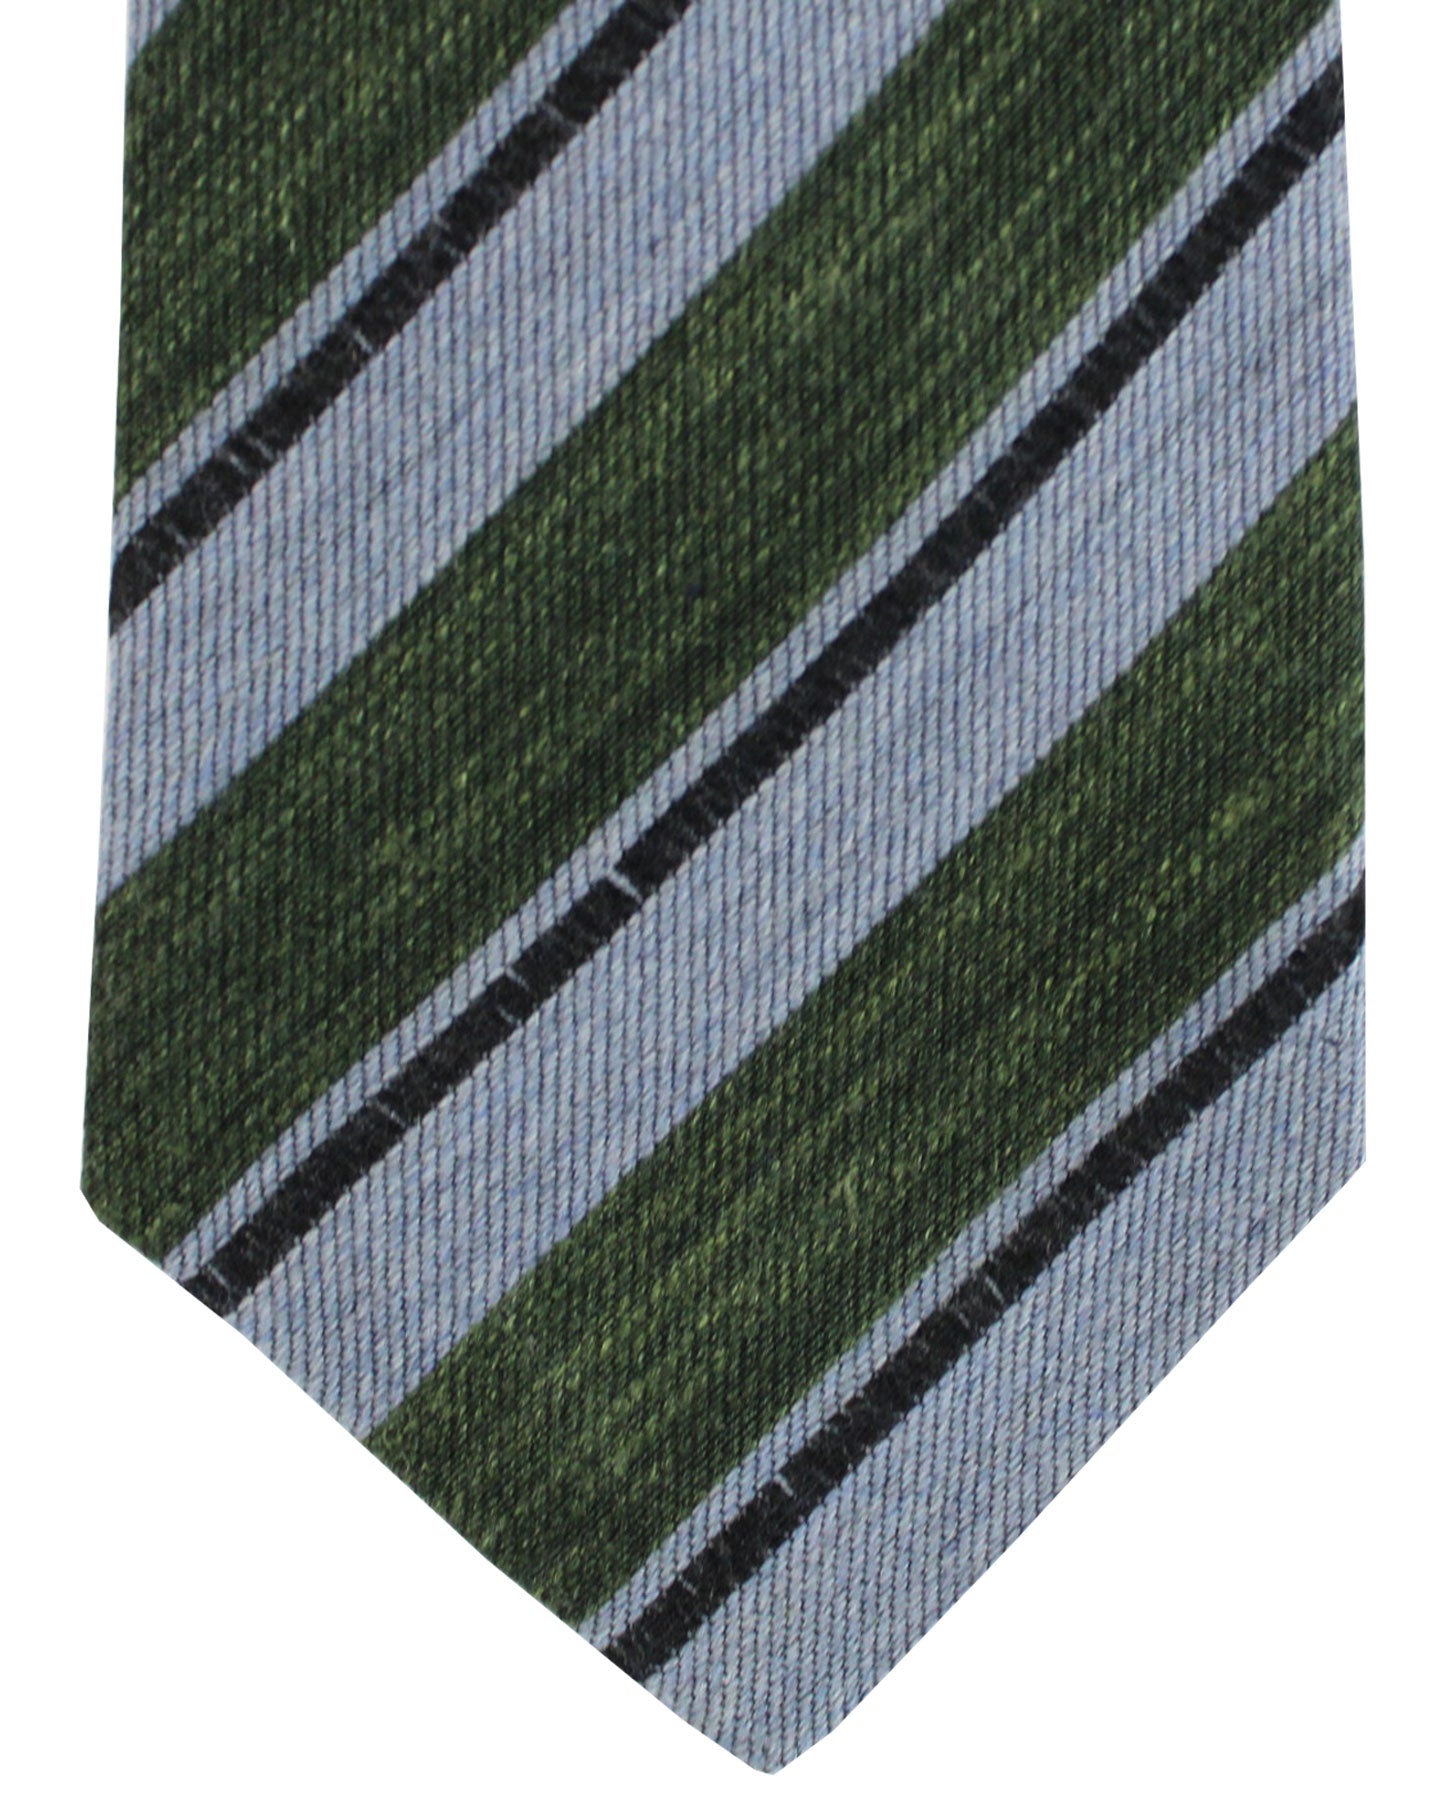 Kiton Wool Silk Linen Tie Blue Green Stripes Design - Sevenfold Necktie